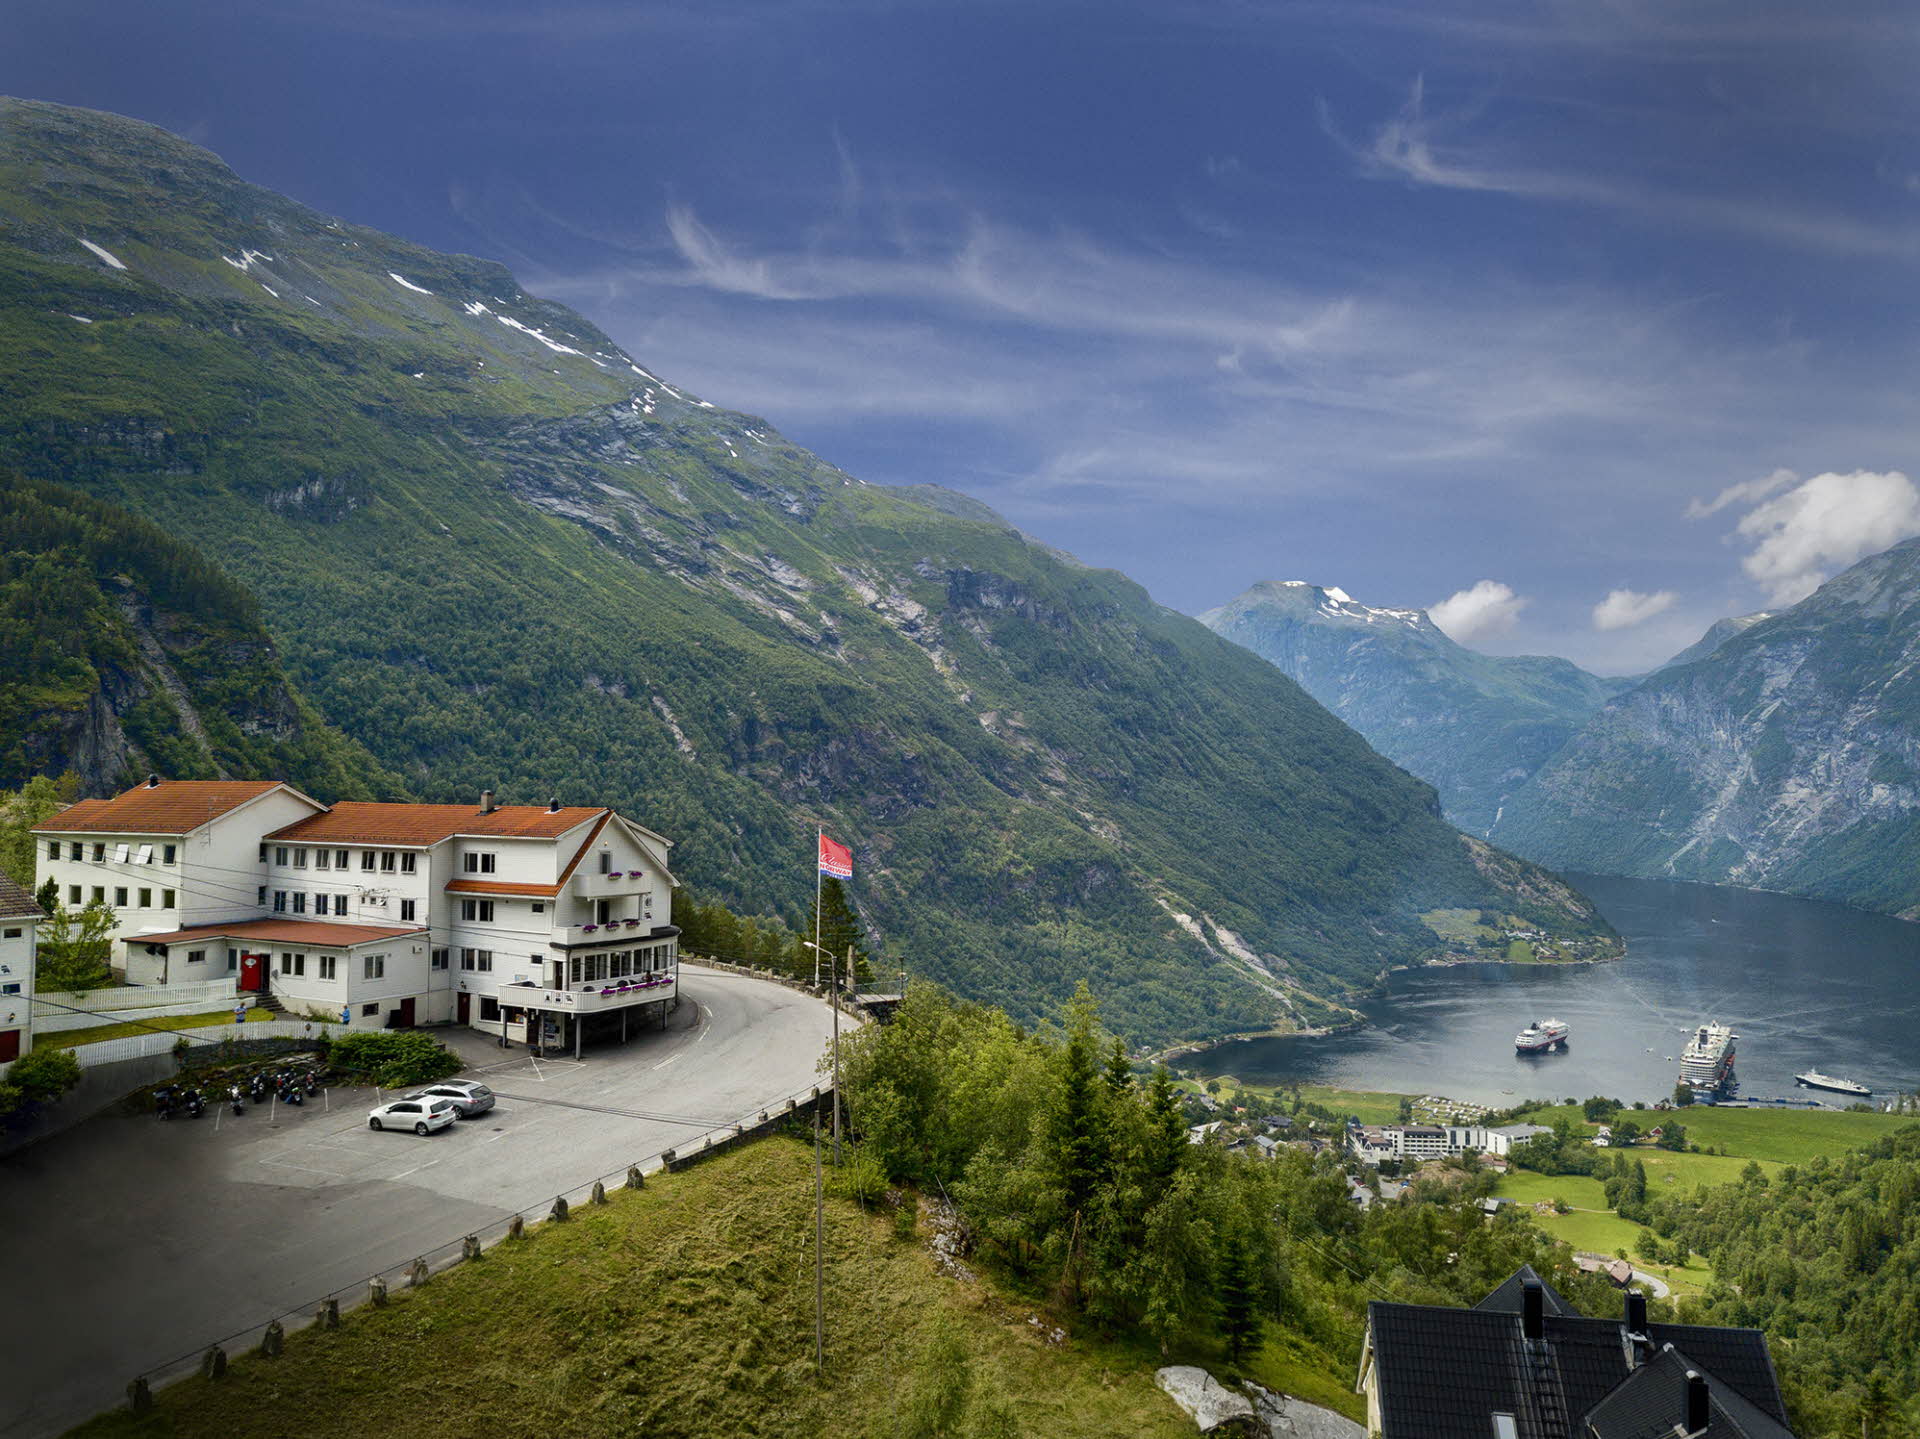 Utsikt over Geiranger og Geirangerfjorden med Hotell Utsikten i front.